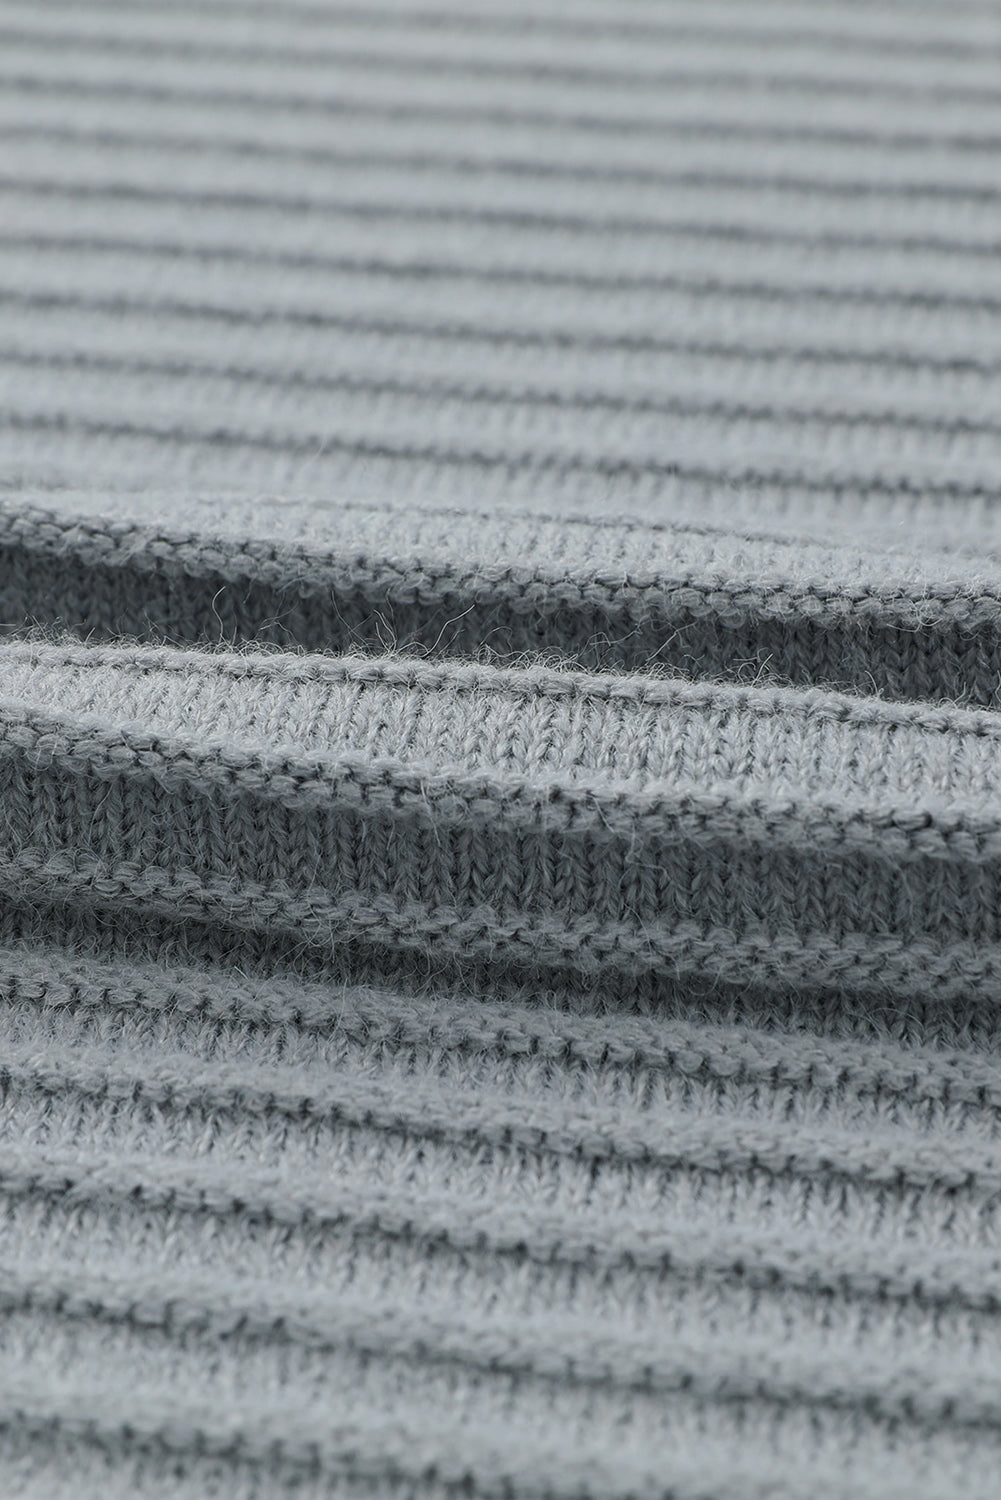 Cardigan con cappuccio aperto sul davanti lavorato a maglia a coste orizzontali grigie